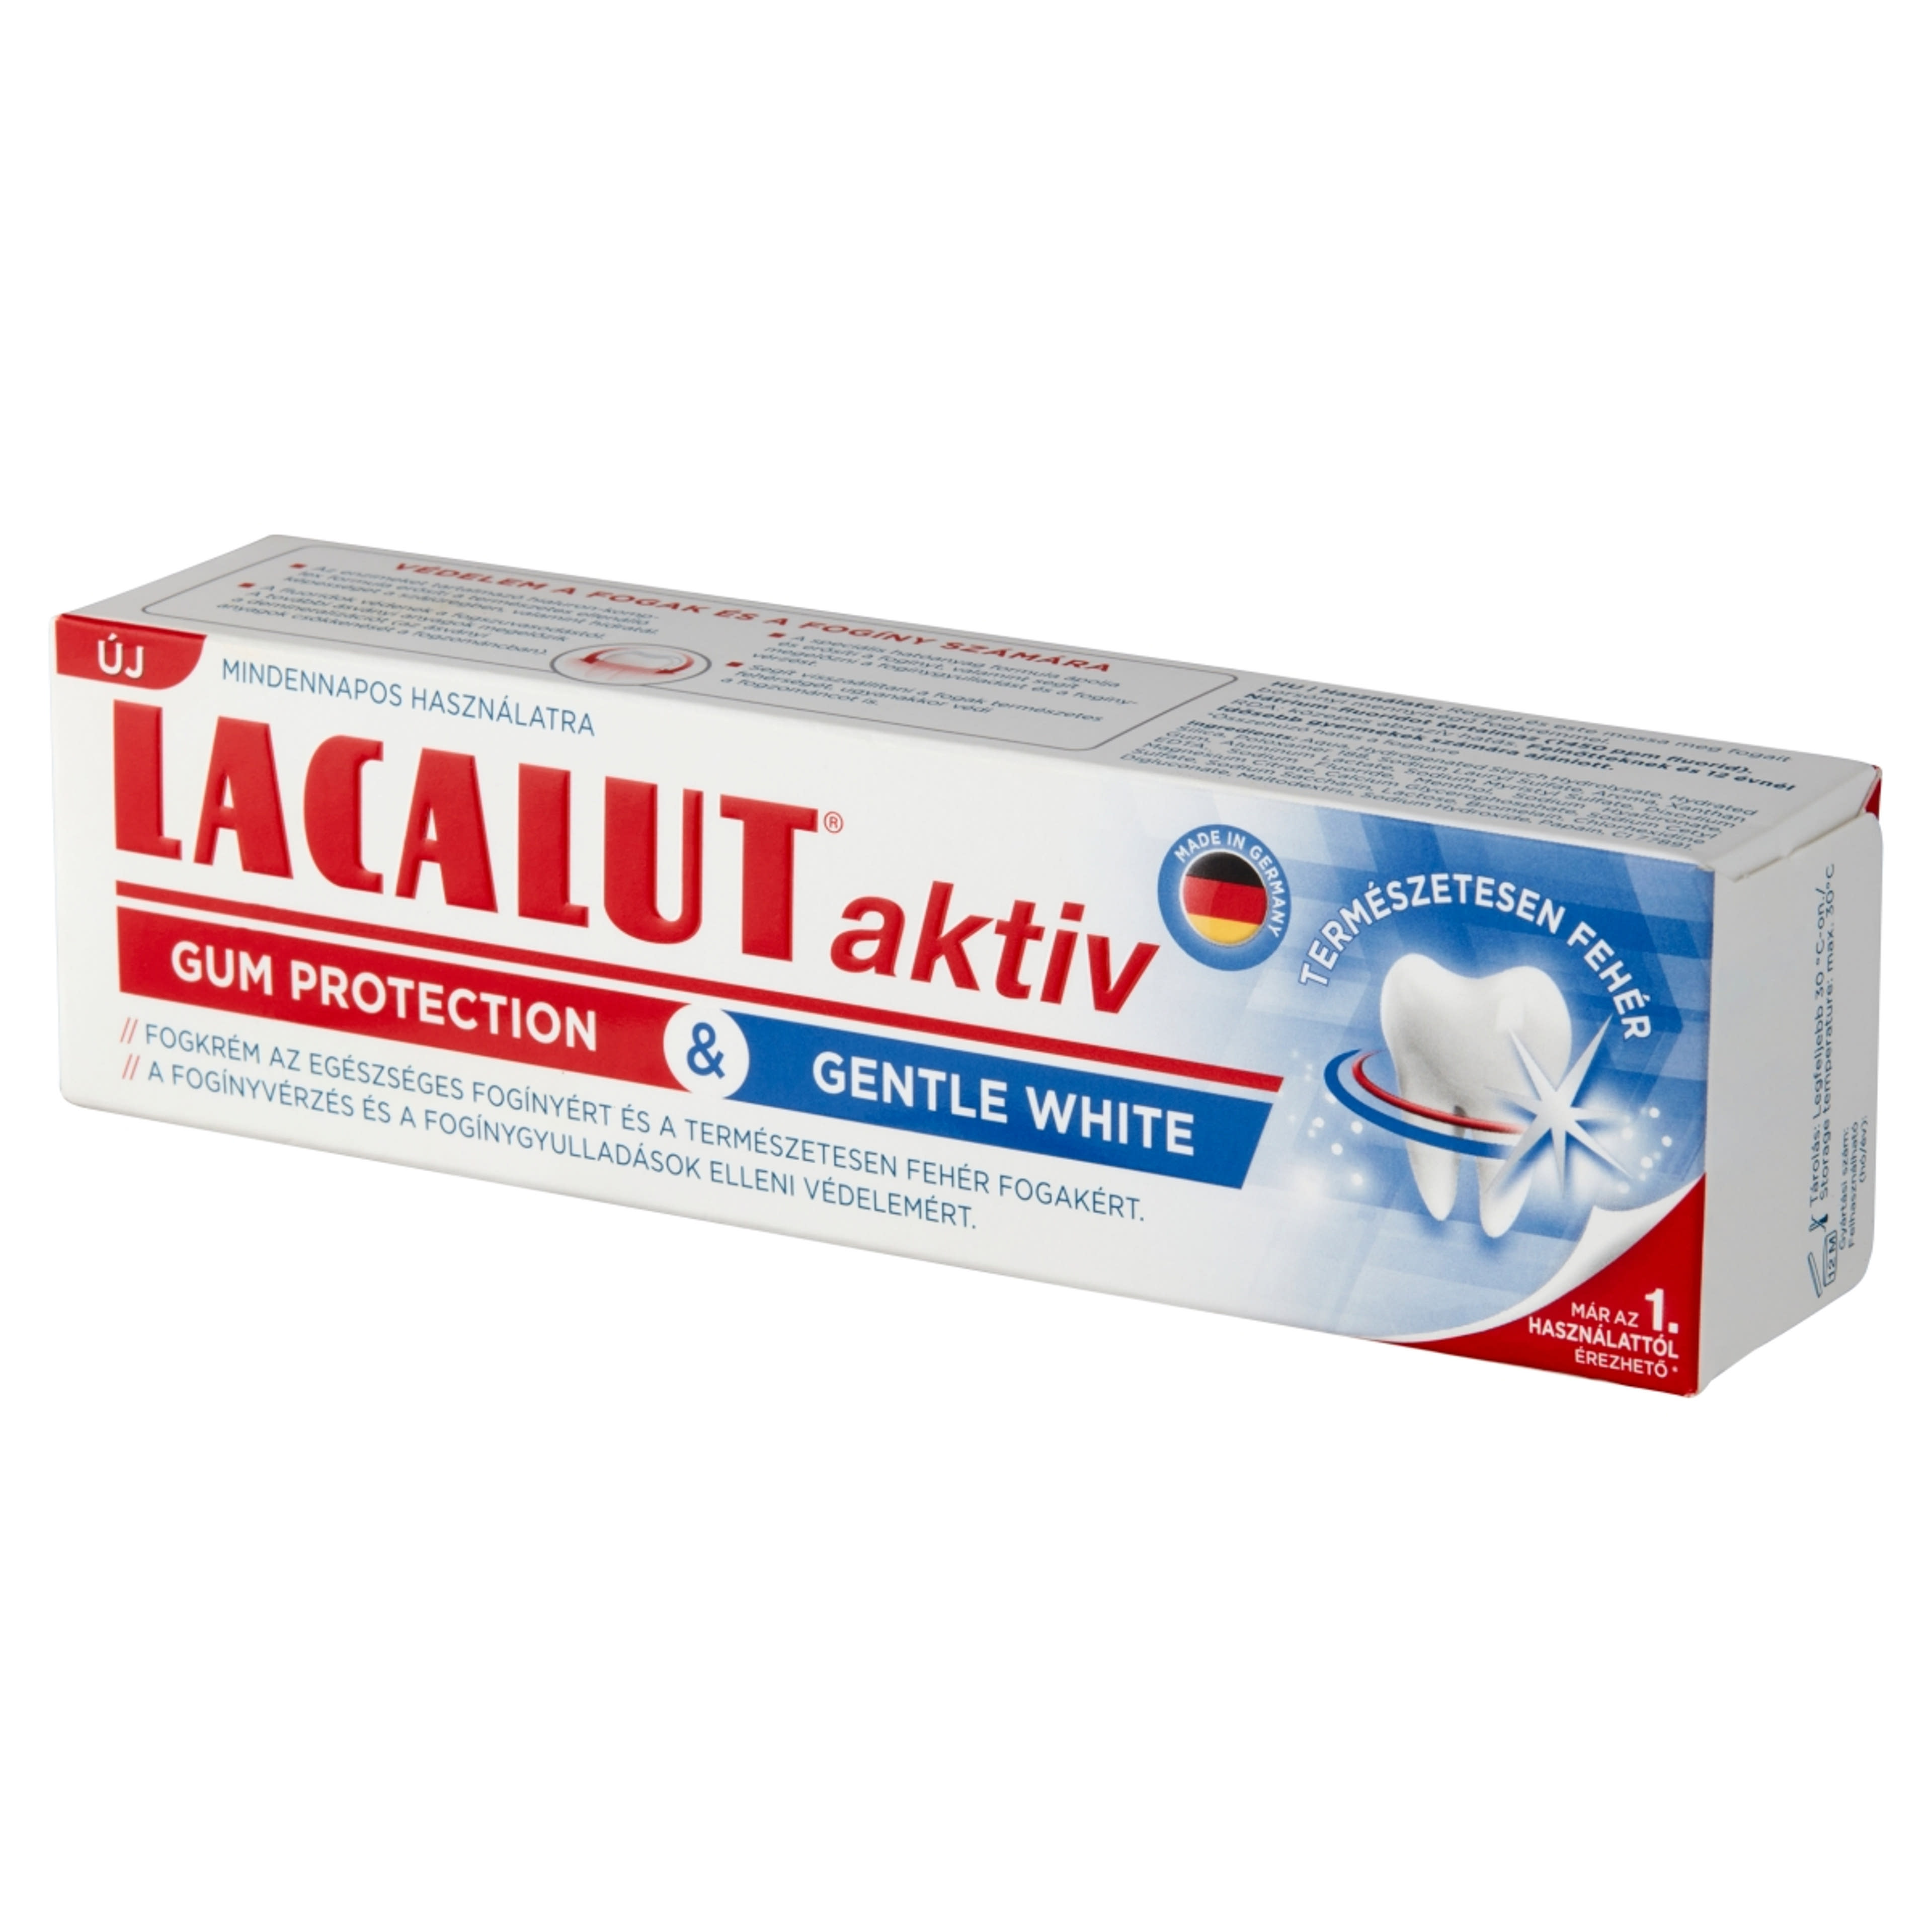 Lacalut Aktiv Gum Protection & Gentle White fogkrém - 75 ml-3